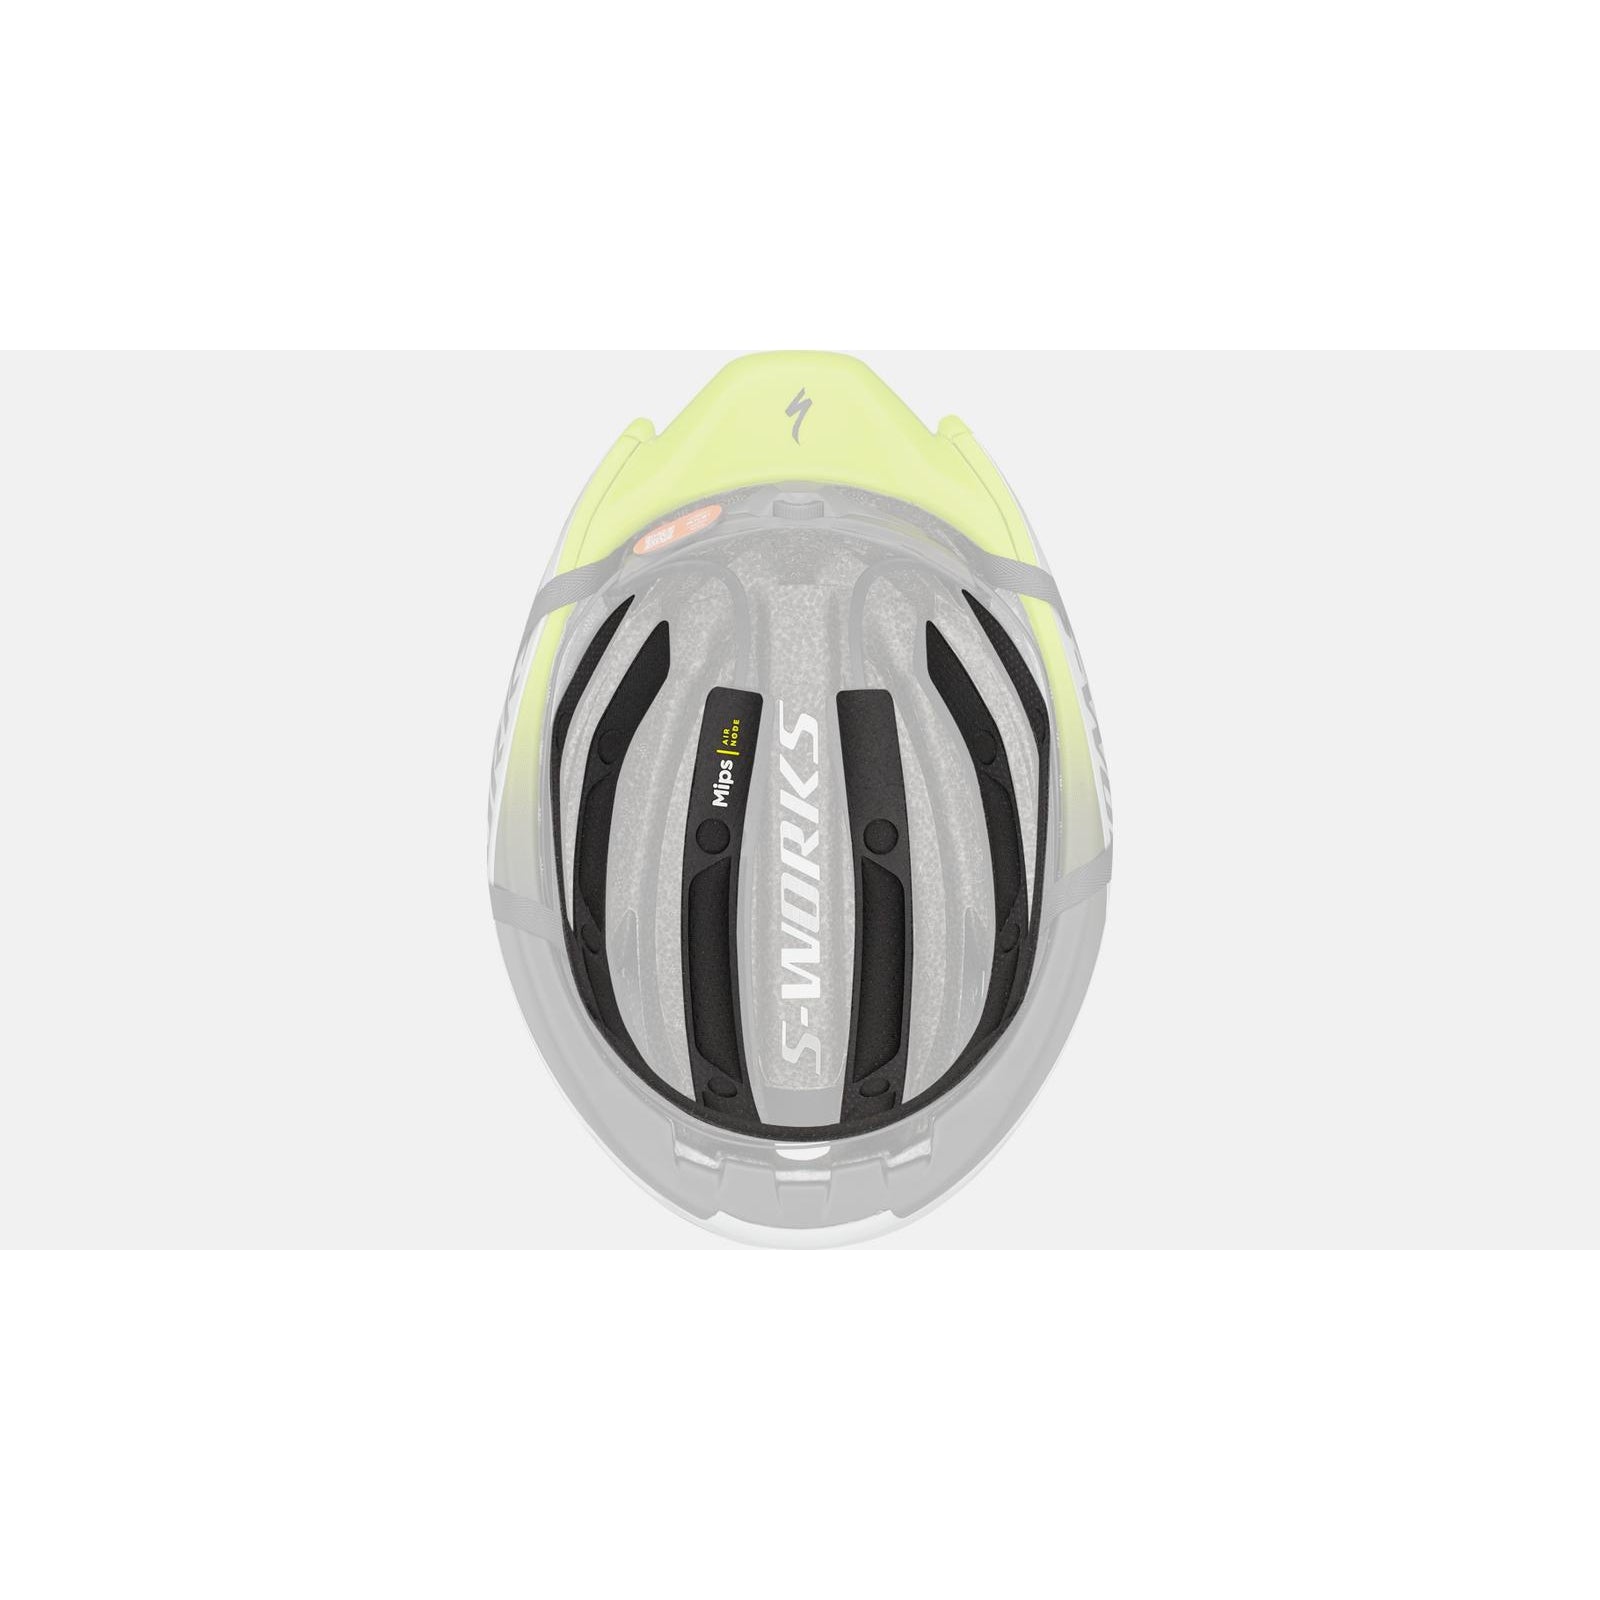 S-Works Evade 3 Road Bike Helmet